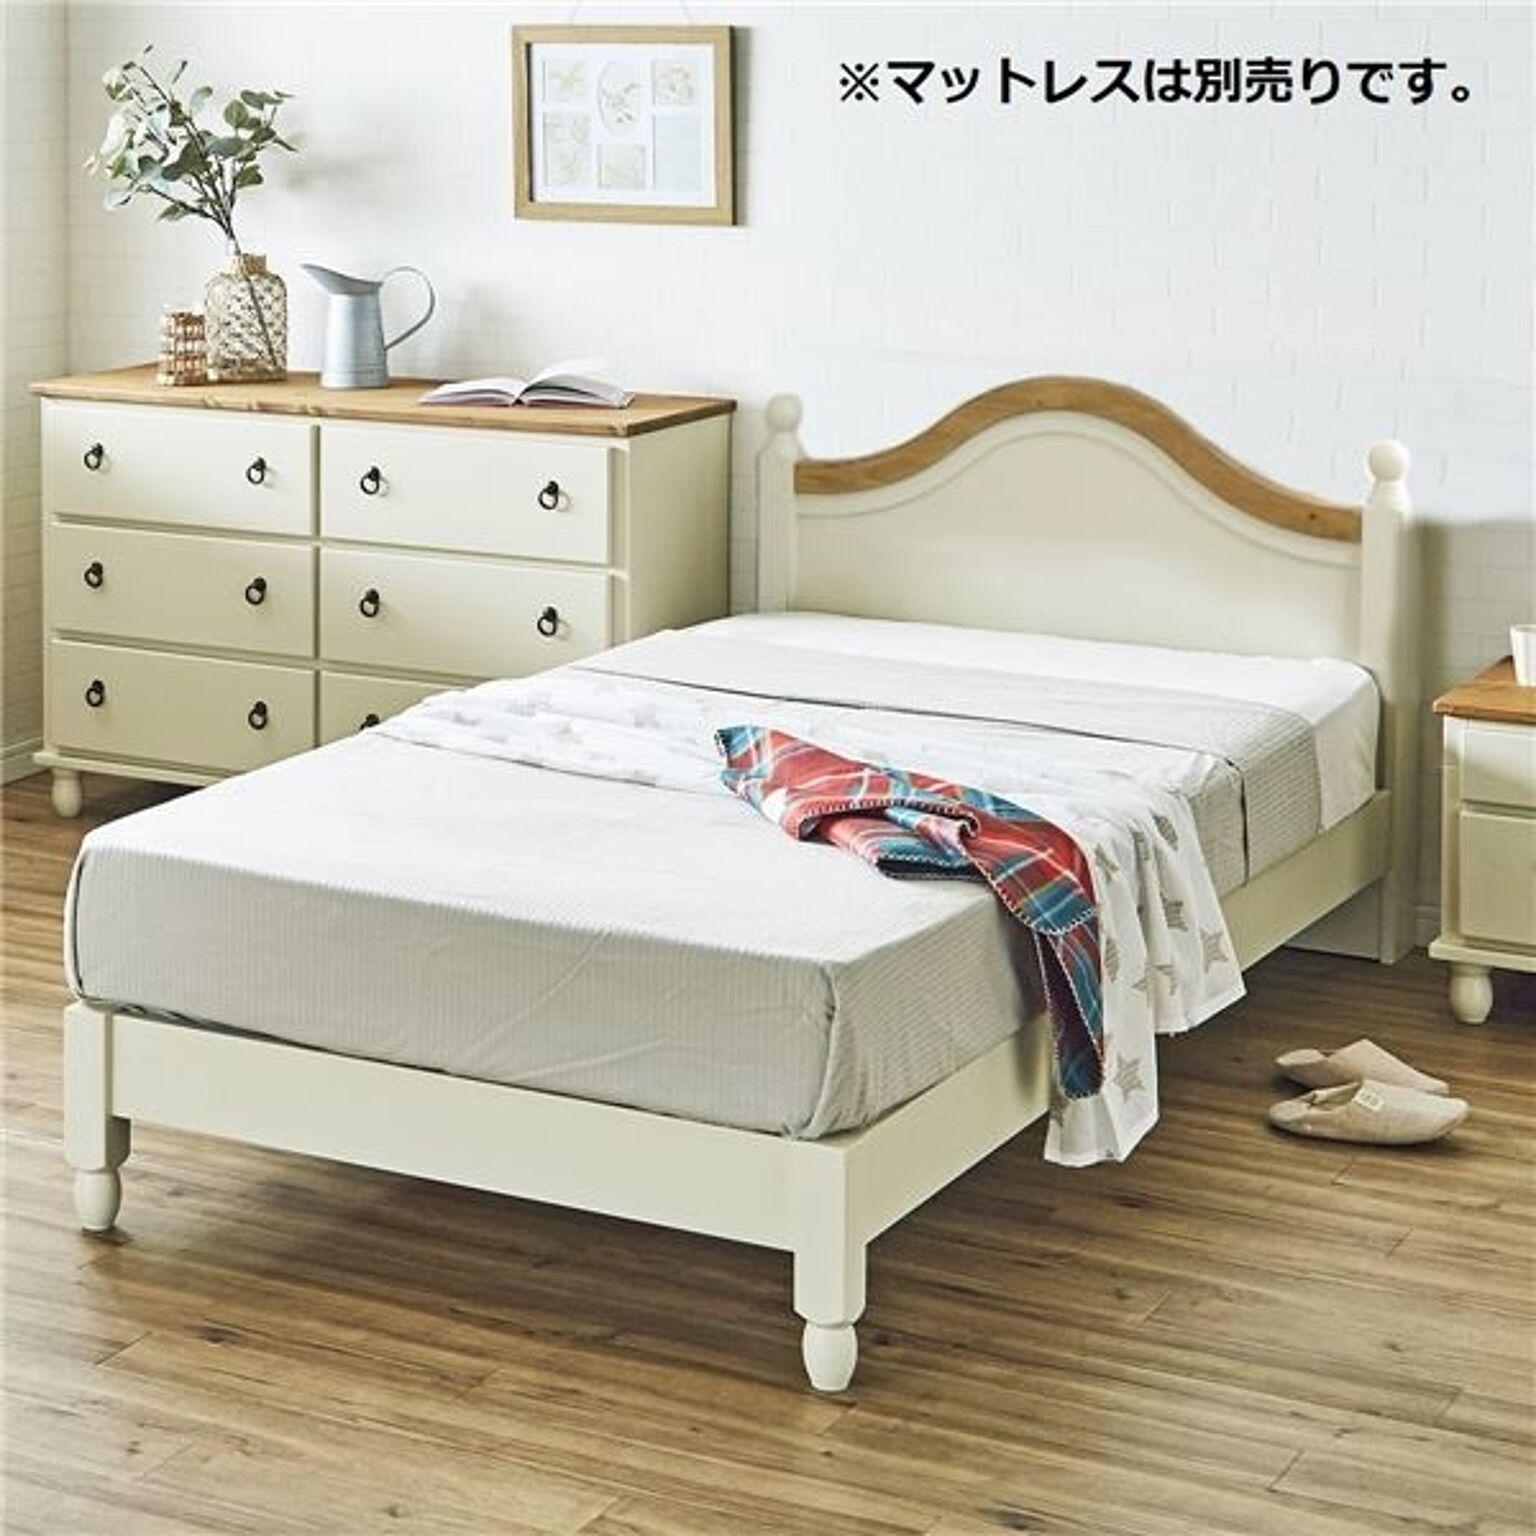 北欧風 シングルベッド/すのこベッド (フレームのみ) 203×103×85cm ホワイト 木製 ベッドフレーム 組立品 マットレス別売